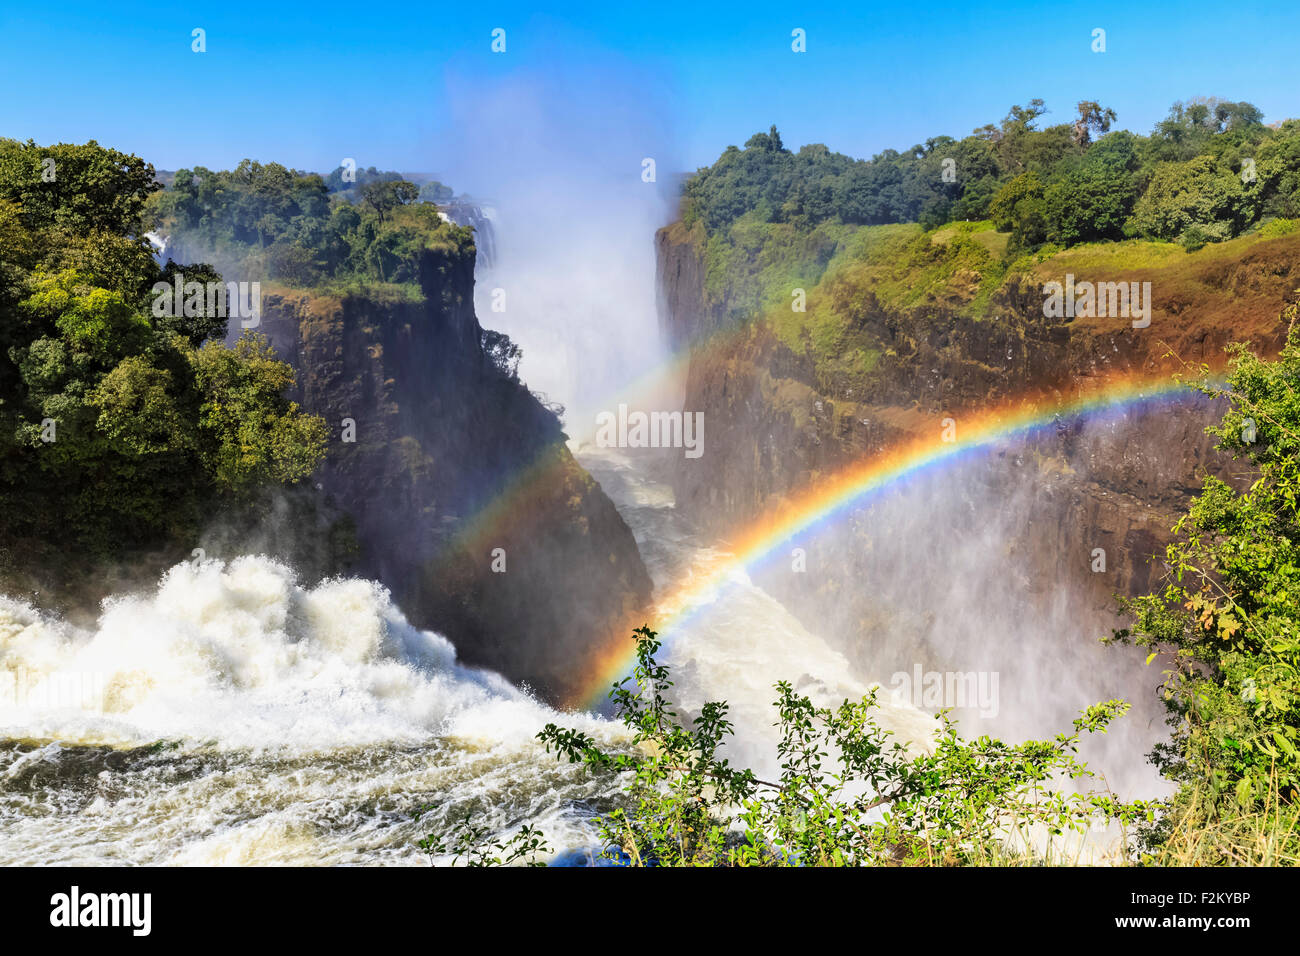 L'Afrique du Sud, le Zimbabwe, les chutes Victoria, Devil's Cataract avec rainbow Banque D'Images